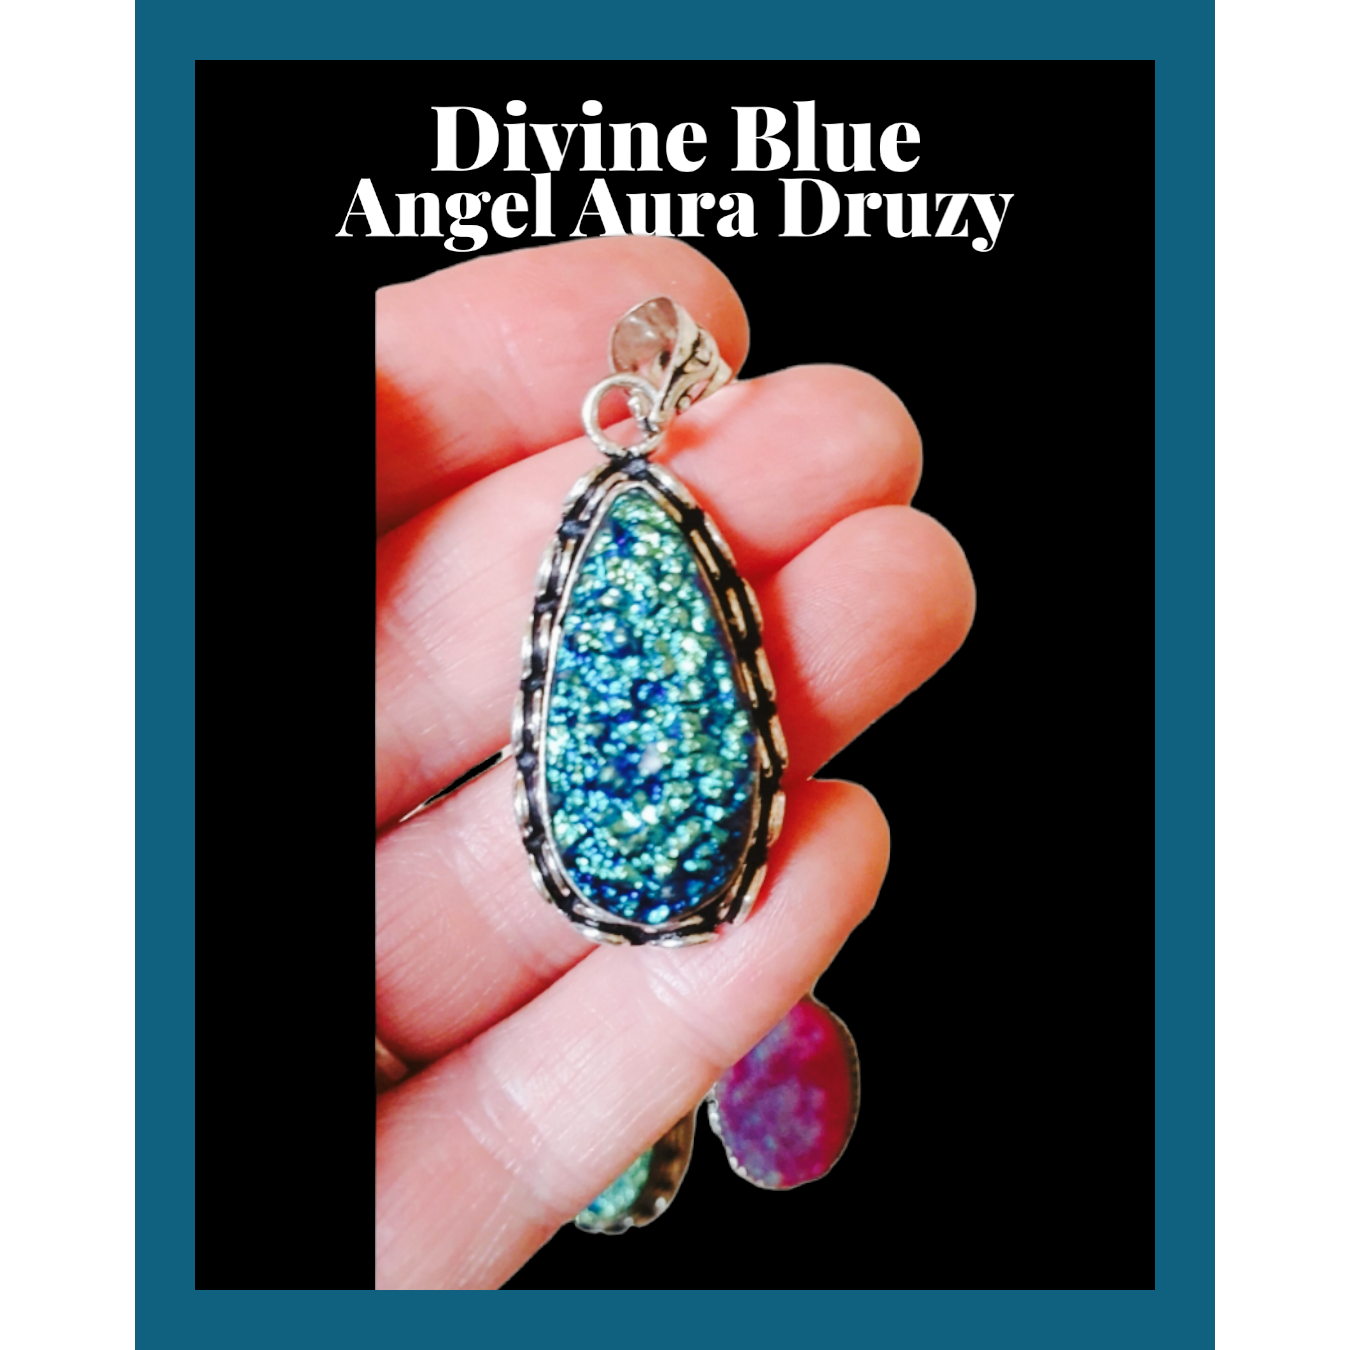 Aura druzy hänge blå Divine blue